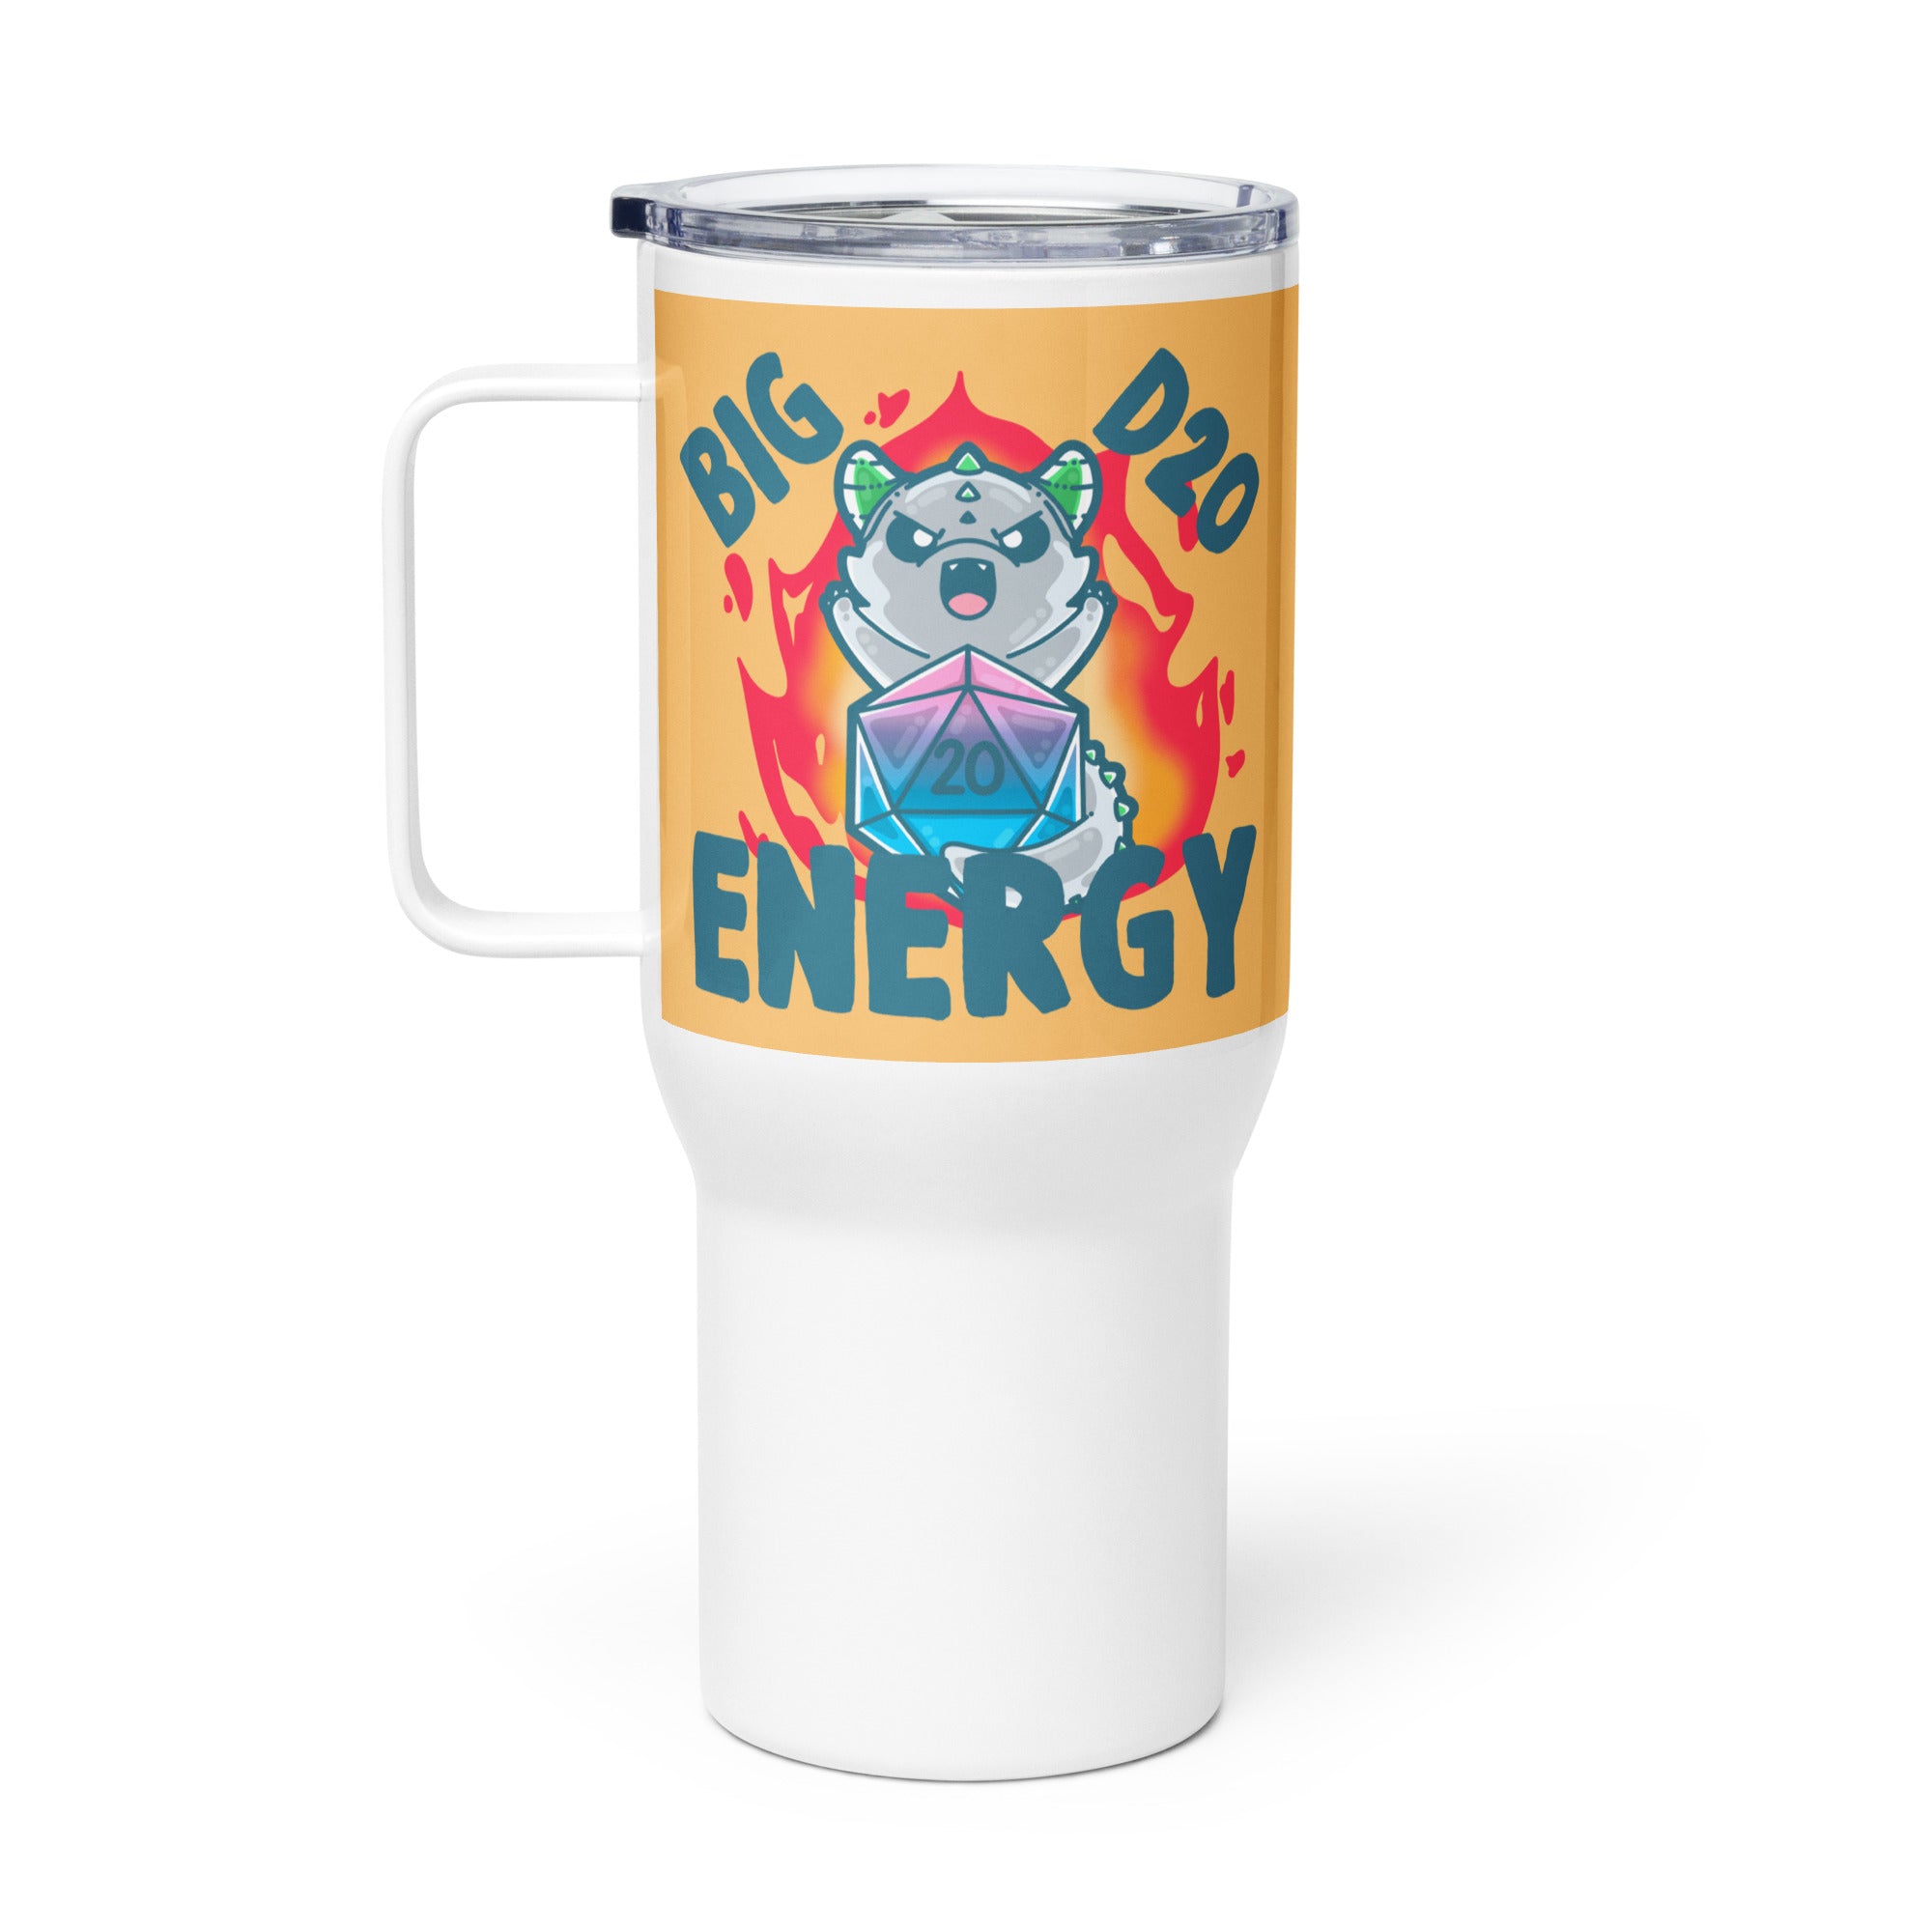 BIG D 20 ENERGY - 25 oz Travel Mug - ChubbleGumLLC